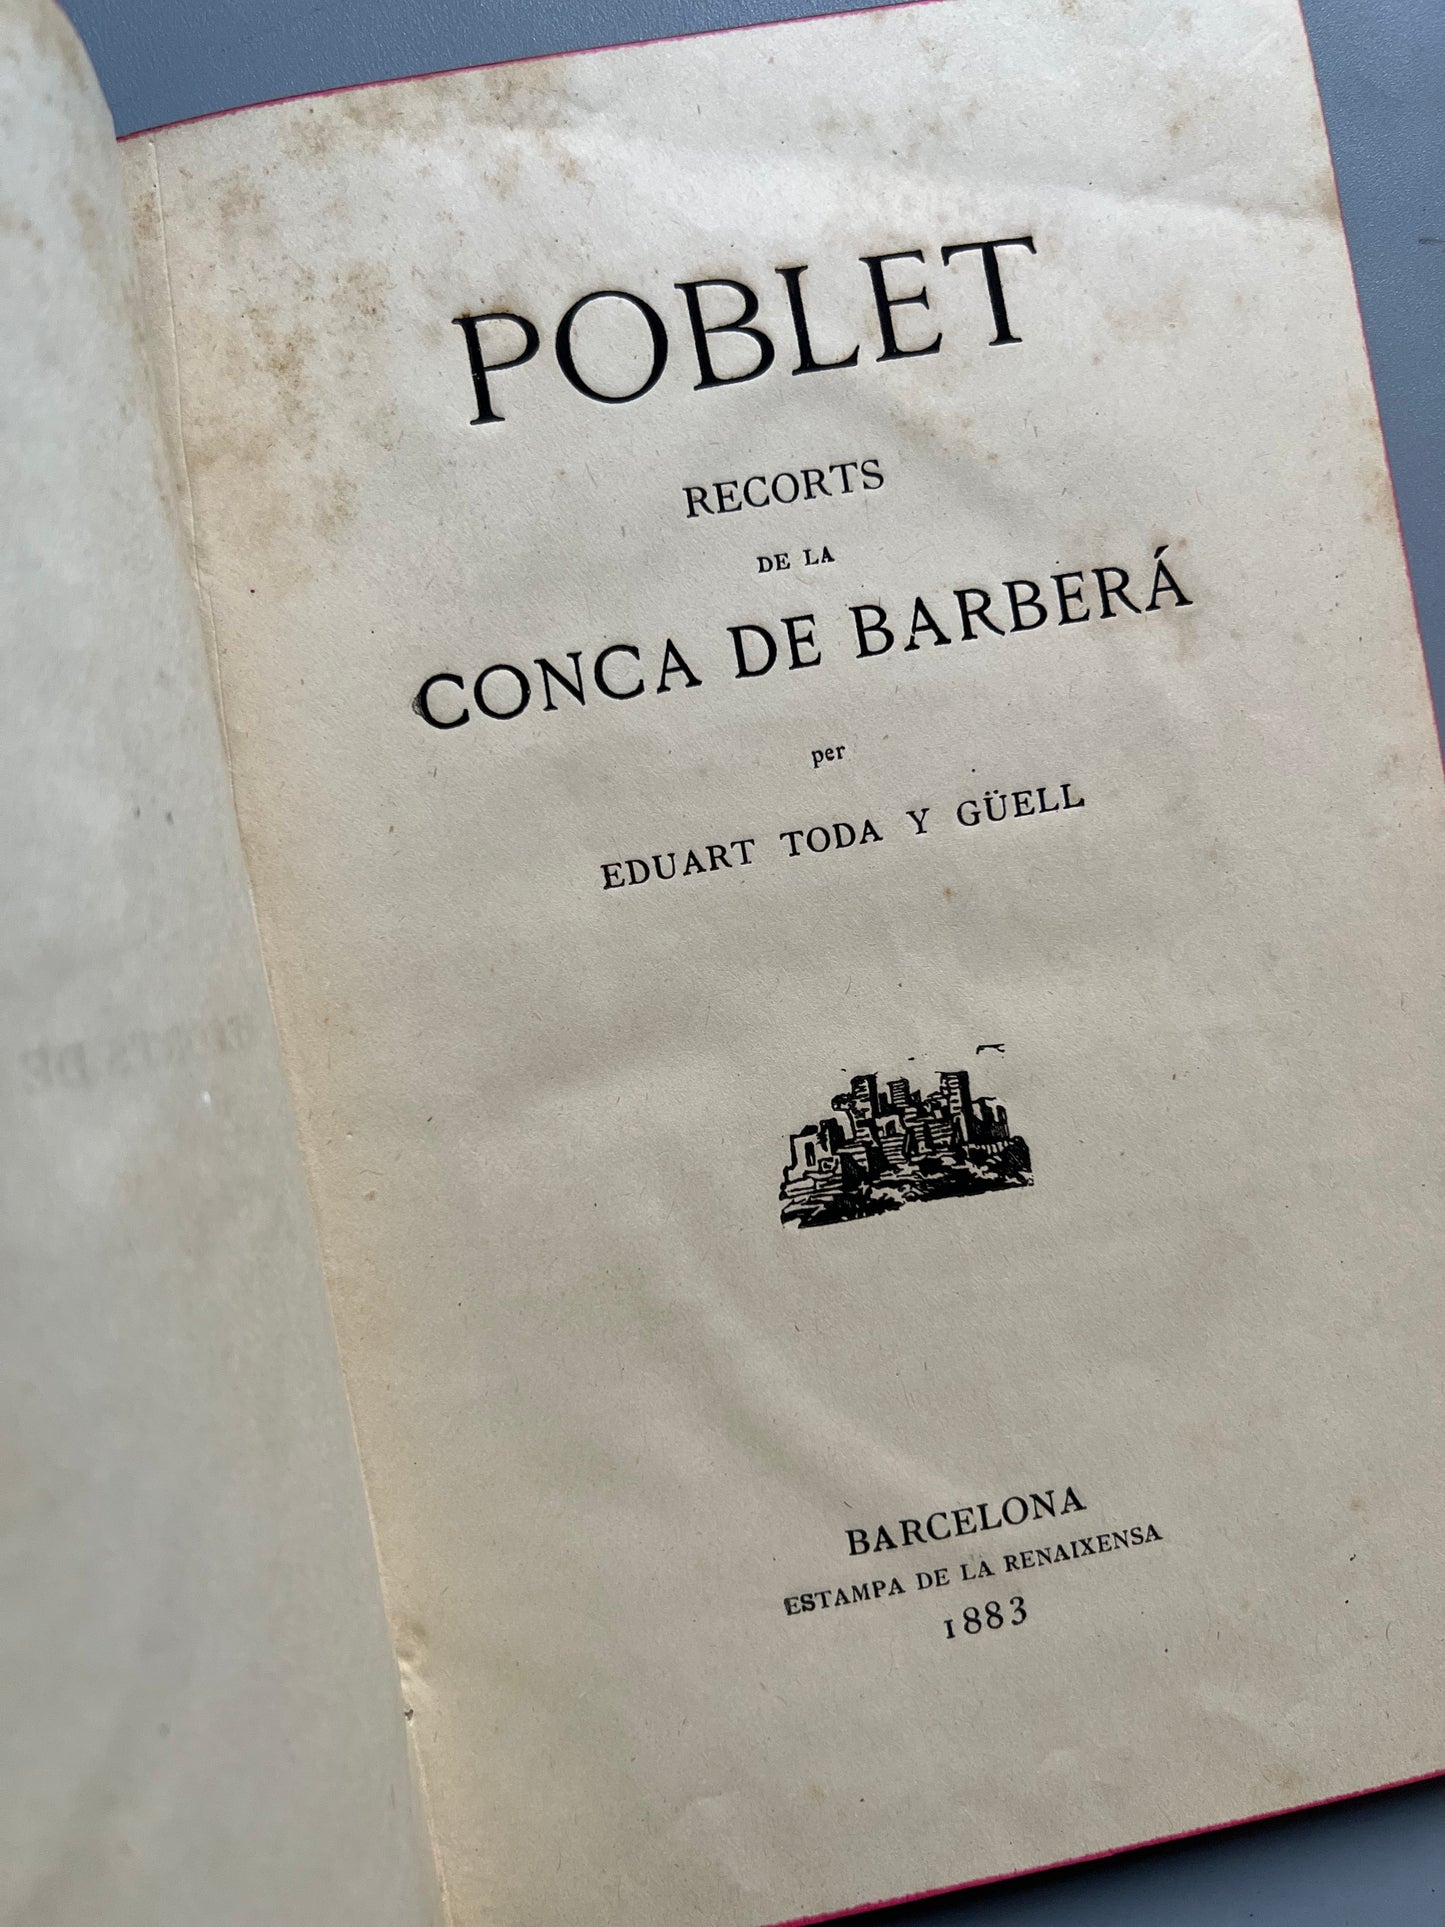 Poblet. Recorts de la conca de Barberá, Eduart Toda y Güell - Estampa de la Renaixensa, 1883